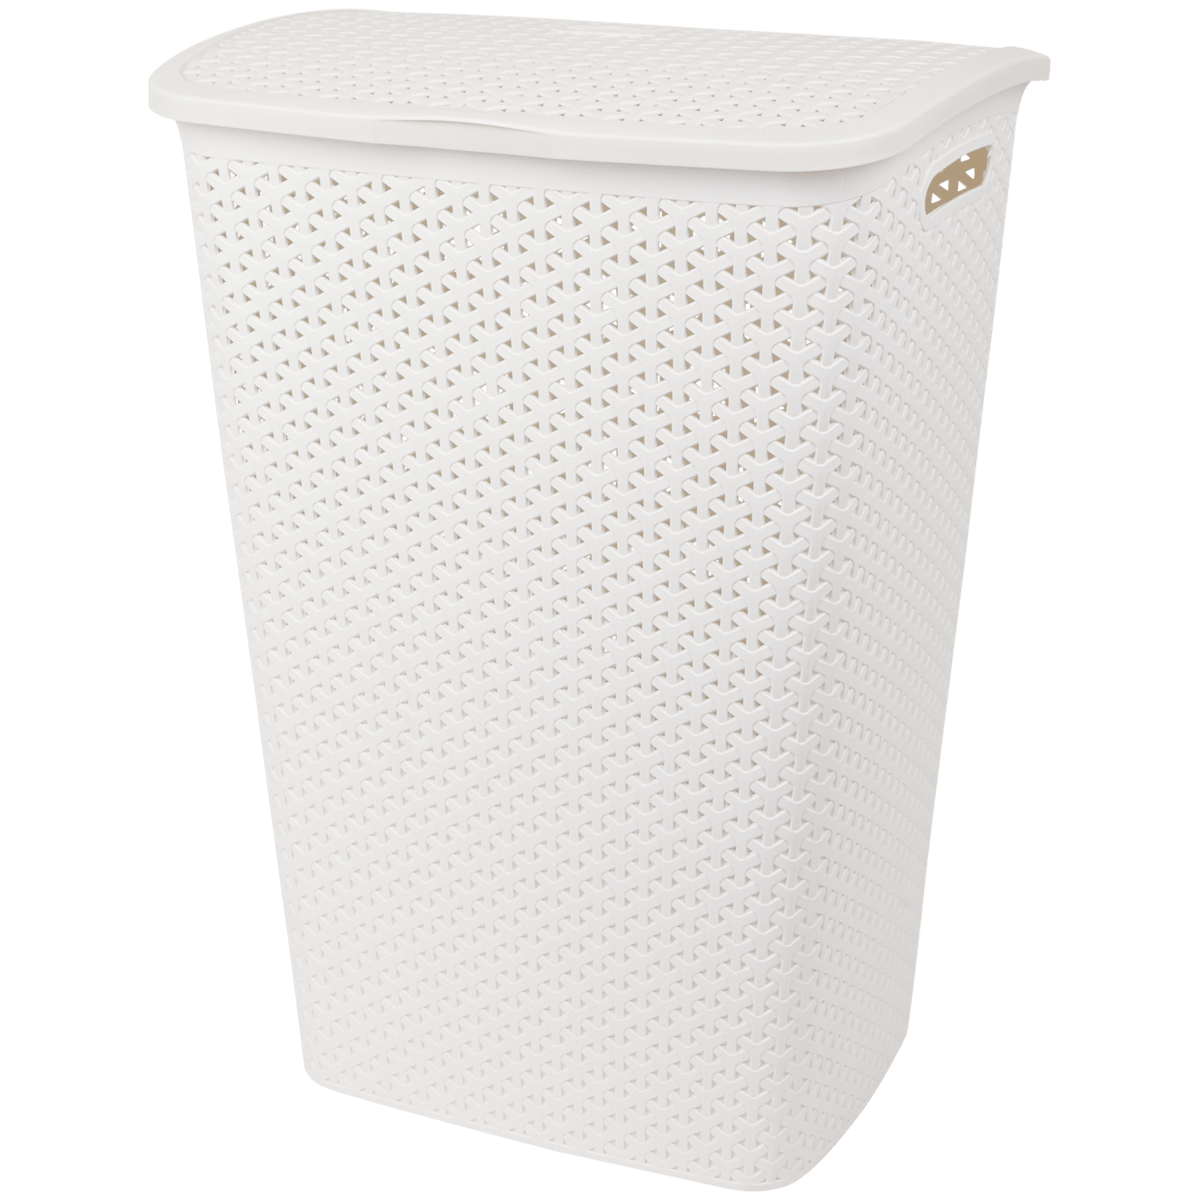 RISATORP Panier, blanc, réduction de déchets - IKEA